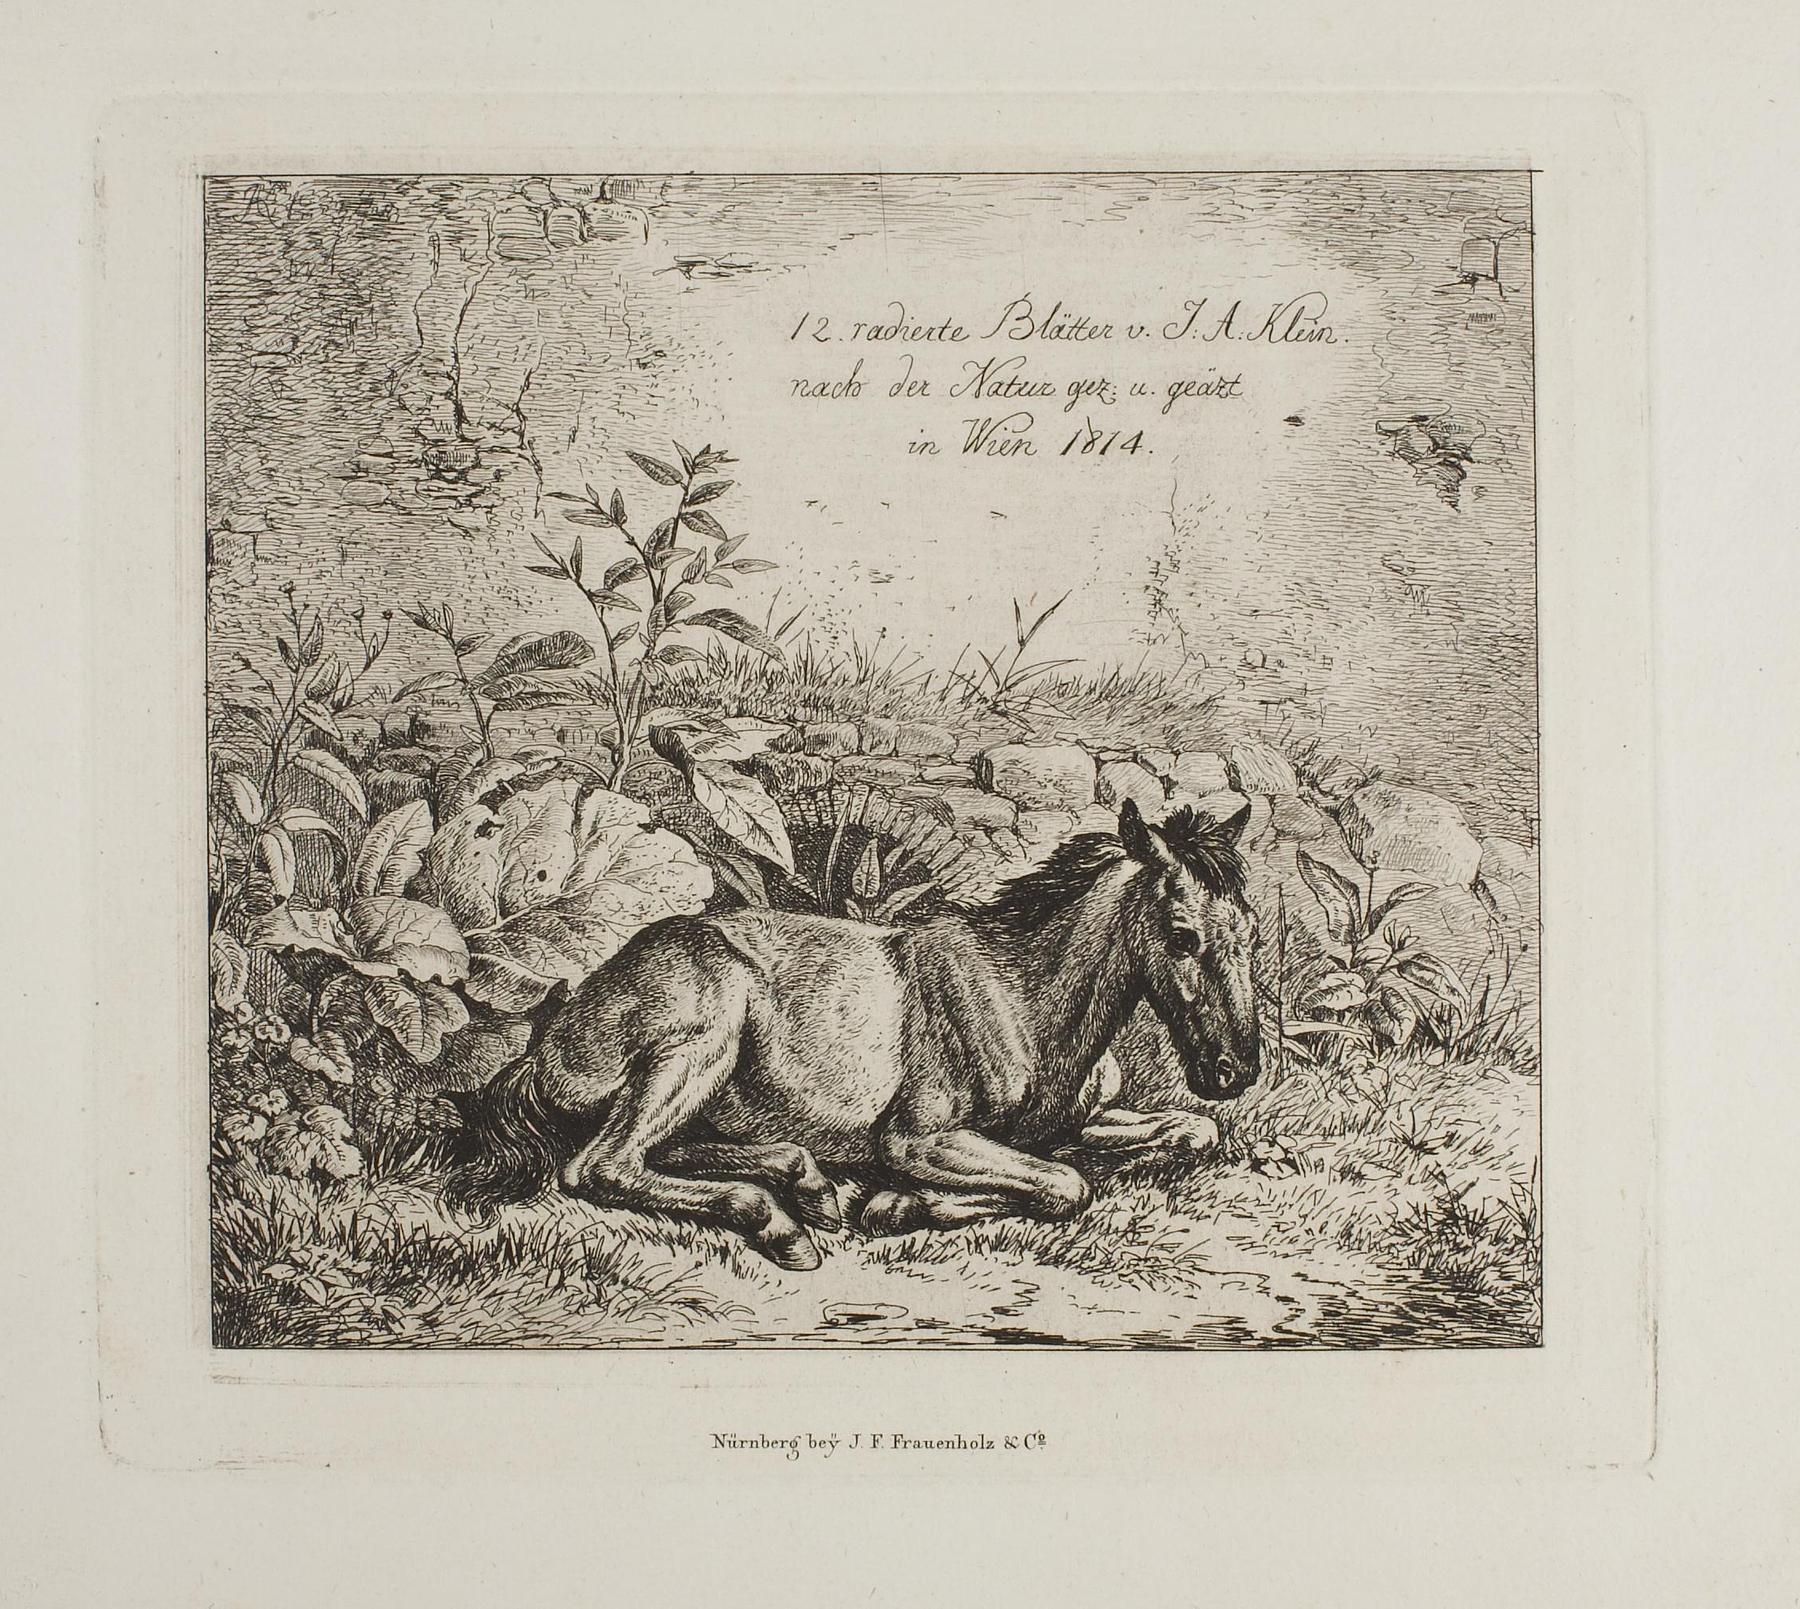 Frontispice for "12 radierte Blätter von Johan Adam Klein", E665,1